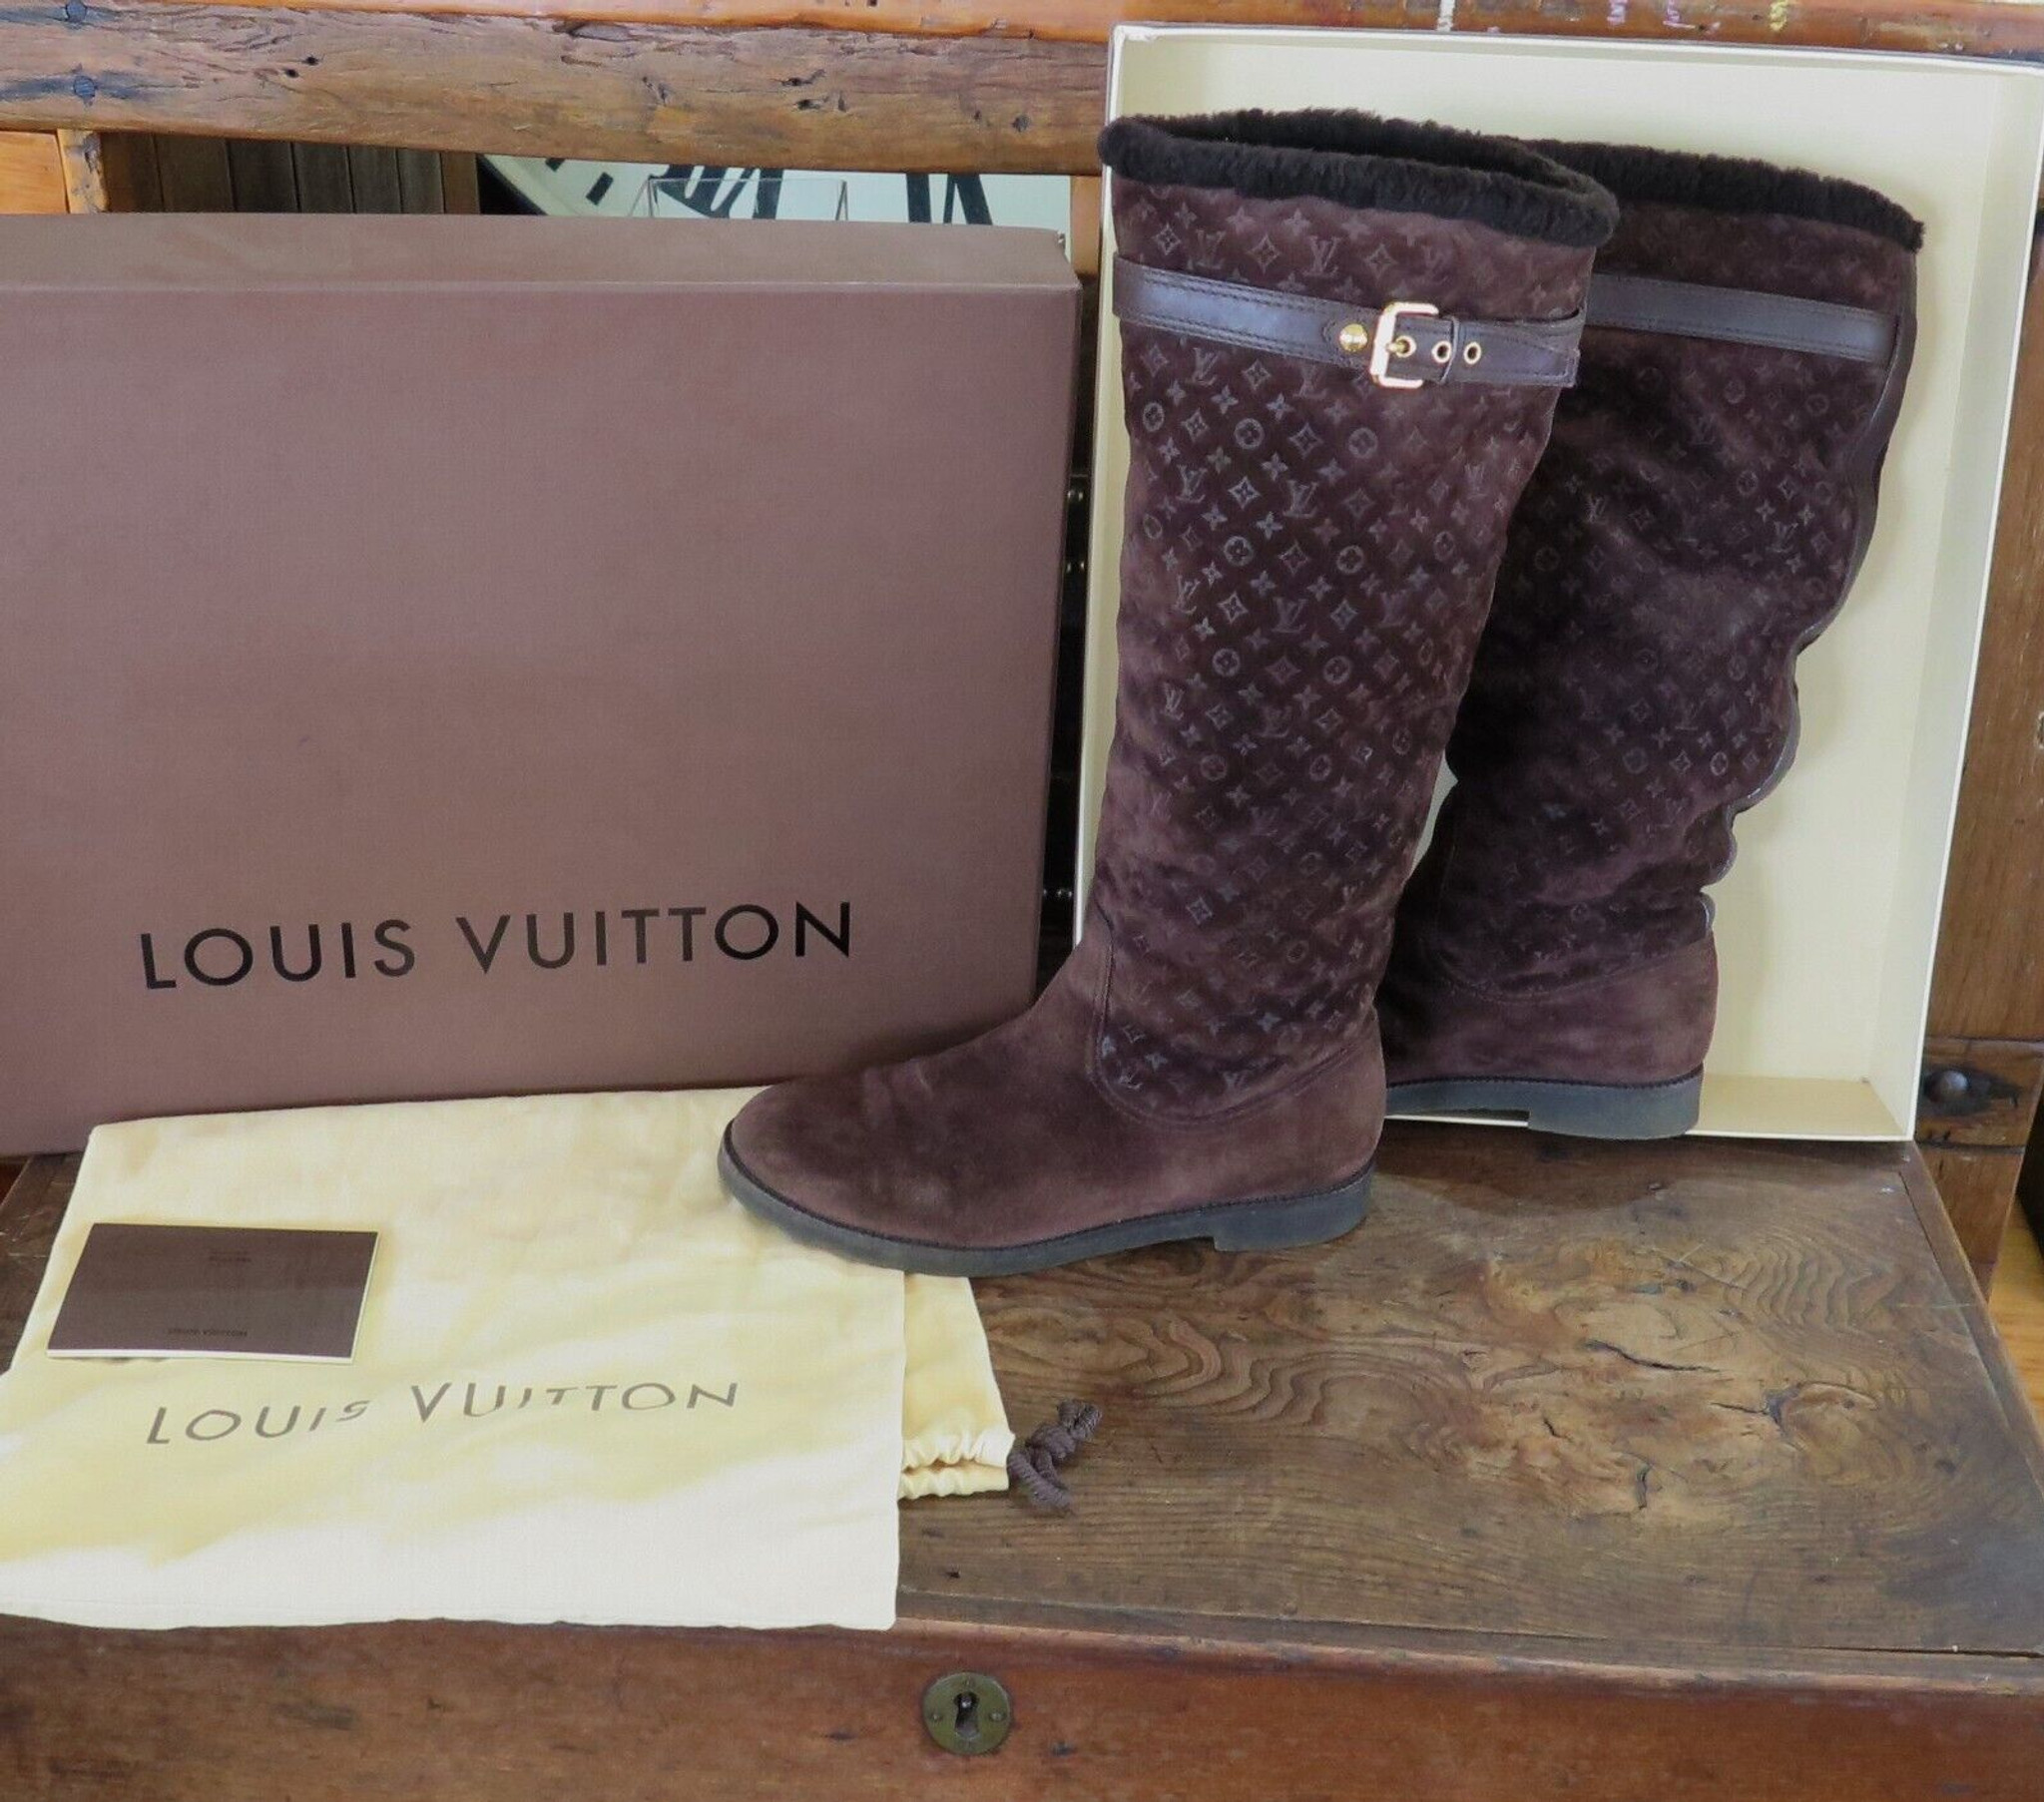 Botas Louis Vuitton LV - $22,500.00